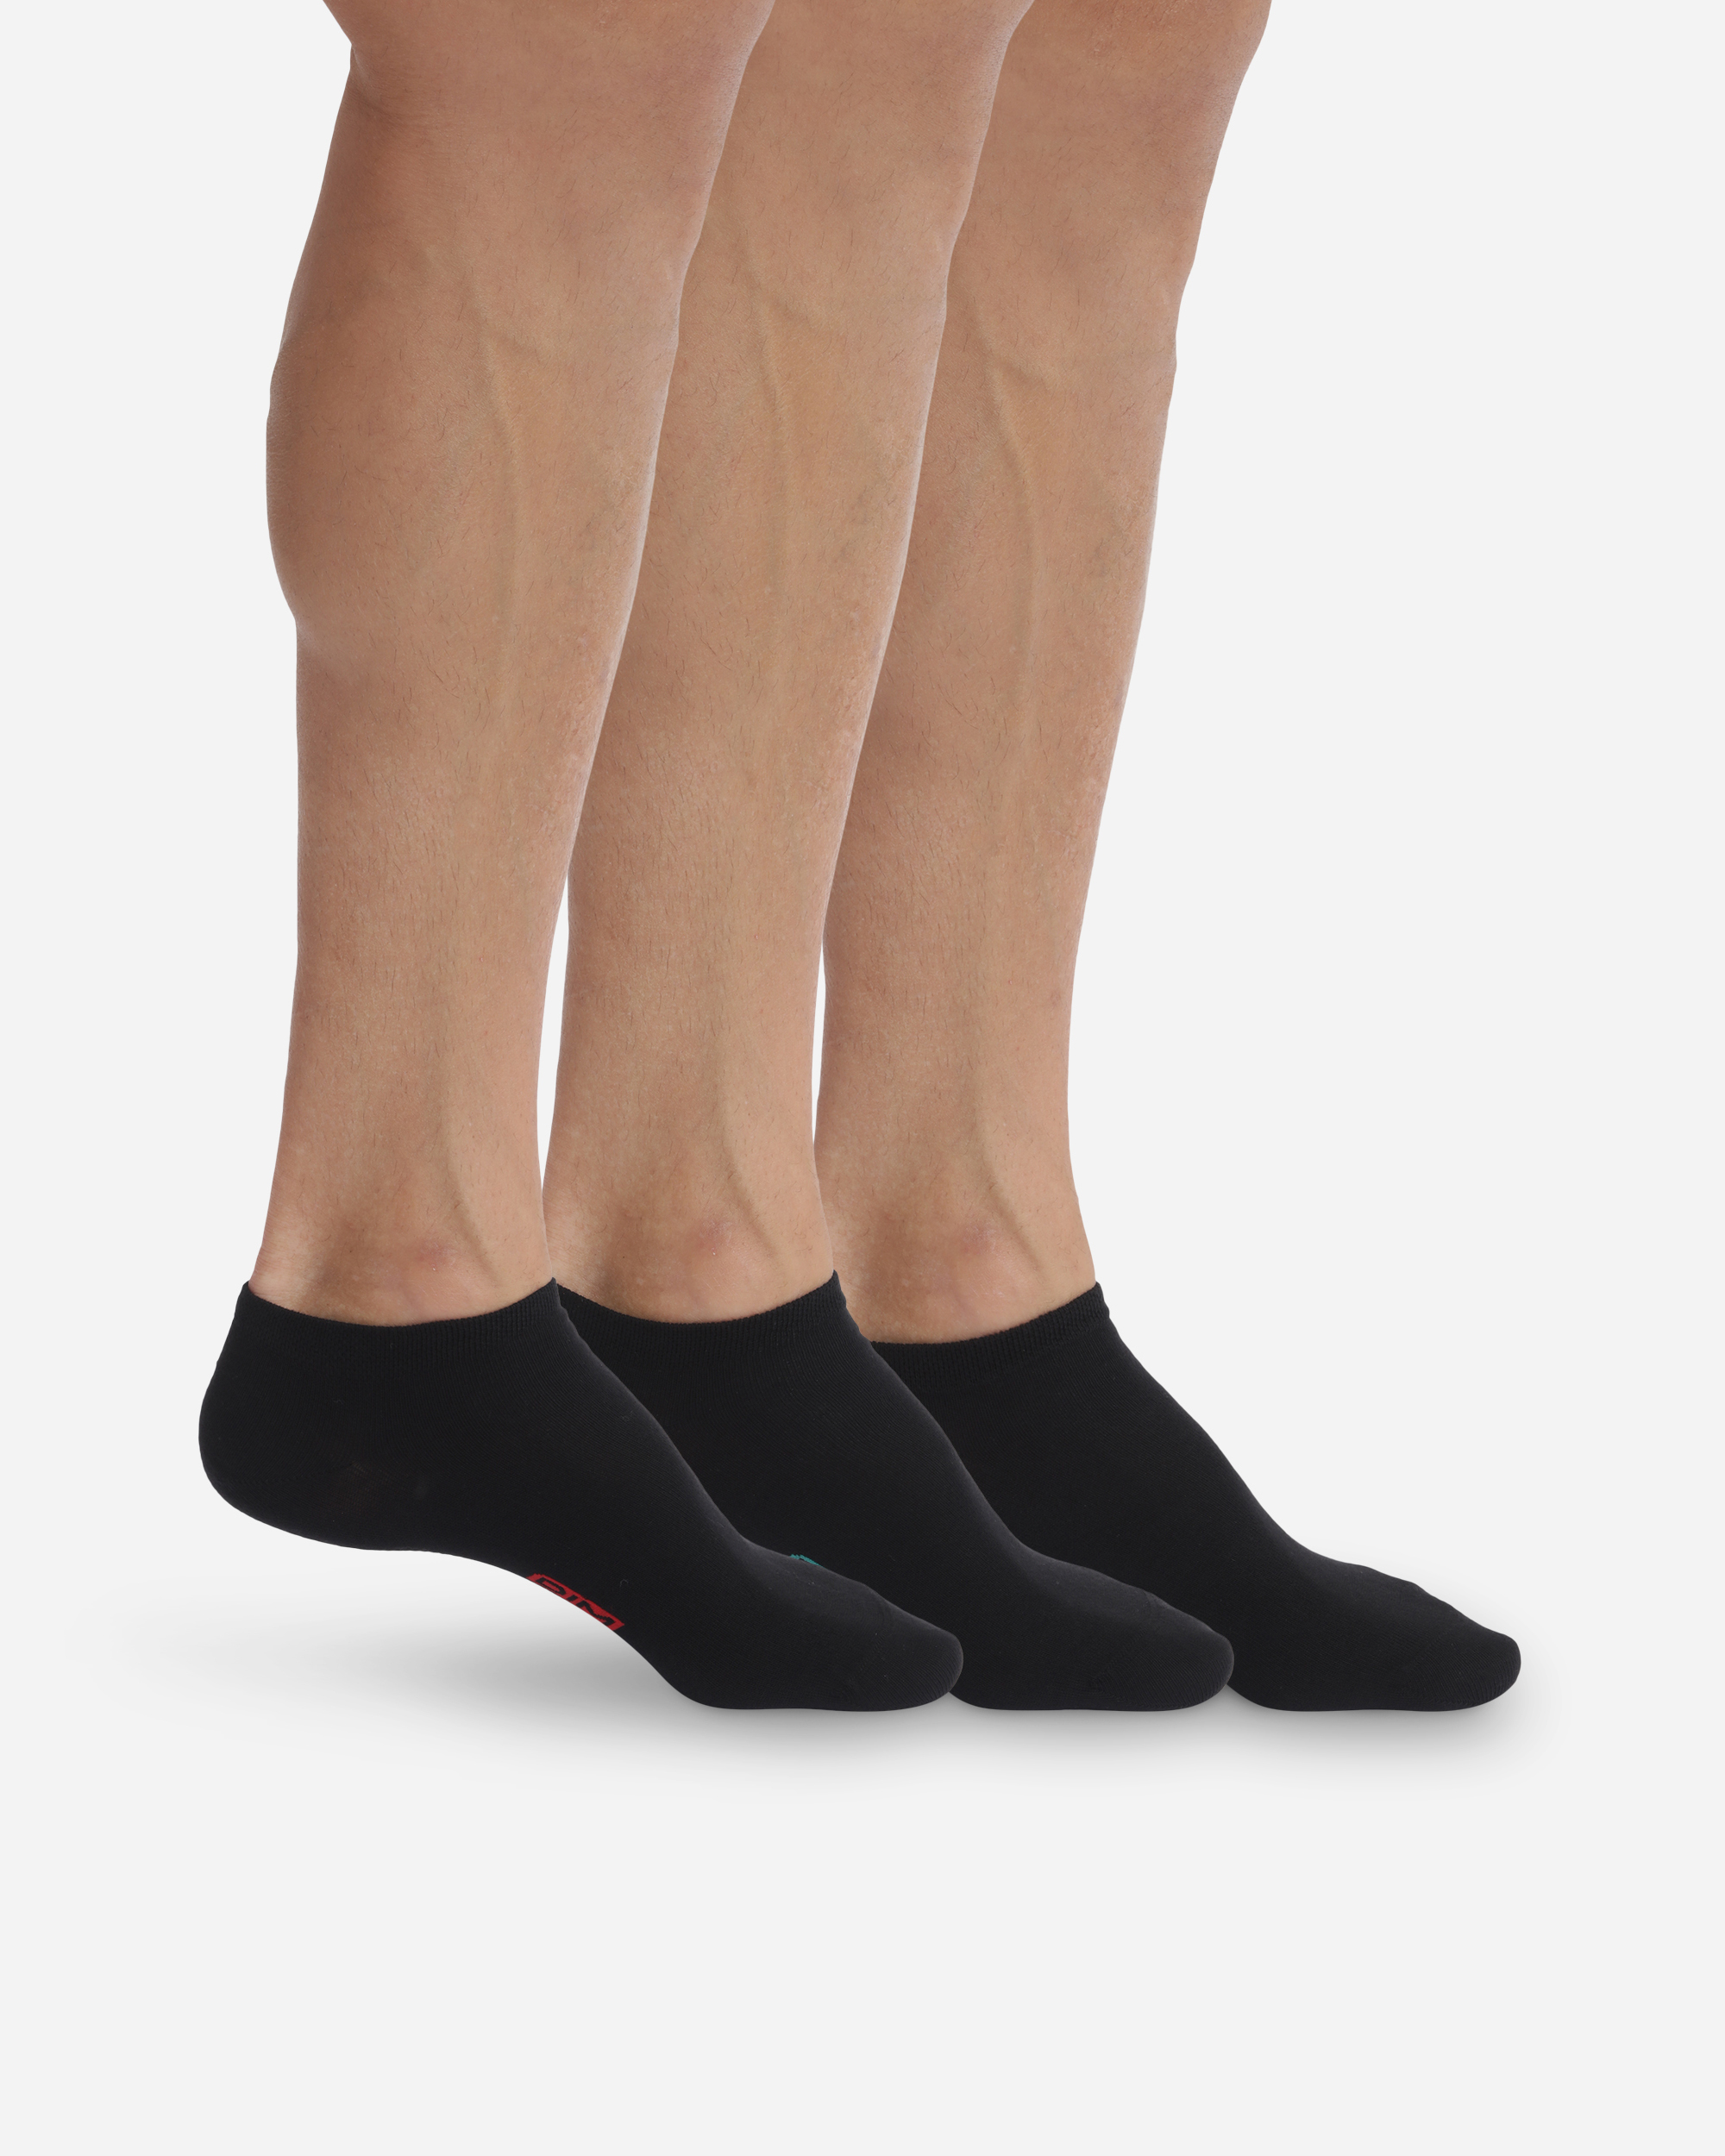 Mi-chaussettes coton X3 noir Homme Basic Coton